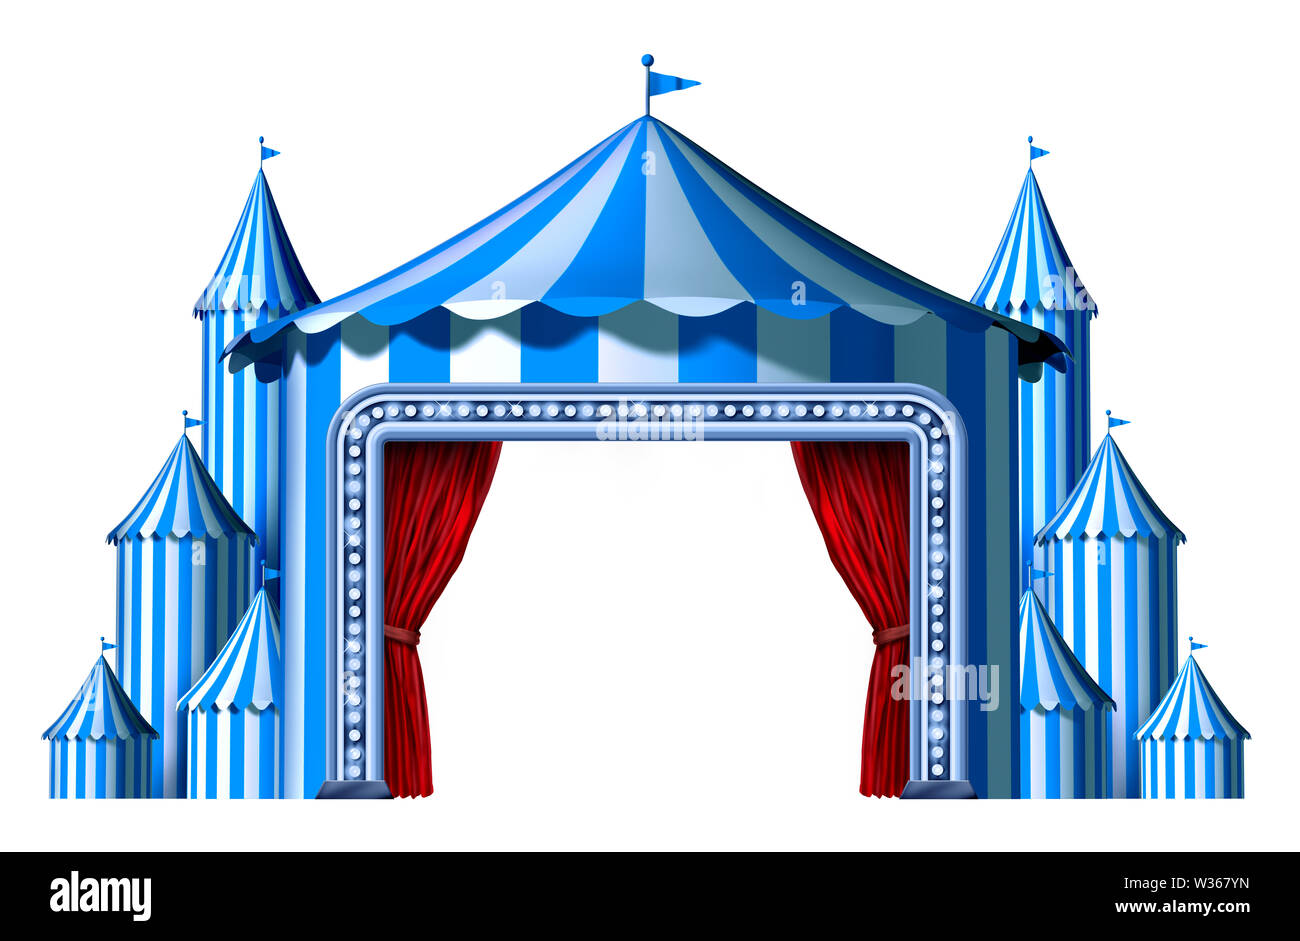 Circus blaues Zelt Bühne mit Leerzeichen als eine Gruppe von Big Top Karneval Zelte mit einem roten Vorhang öffnen Eingang als Spaß Unterhaltung Symbol. Stockfoto